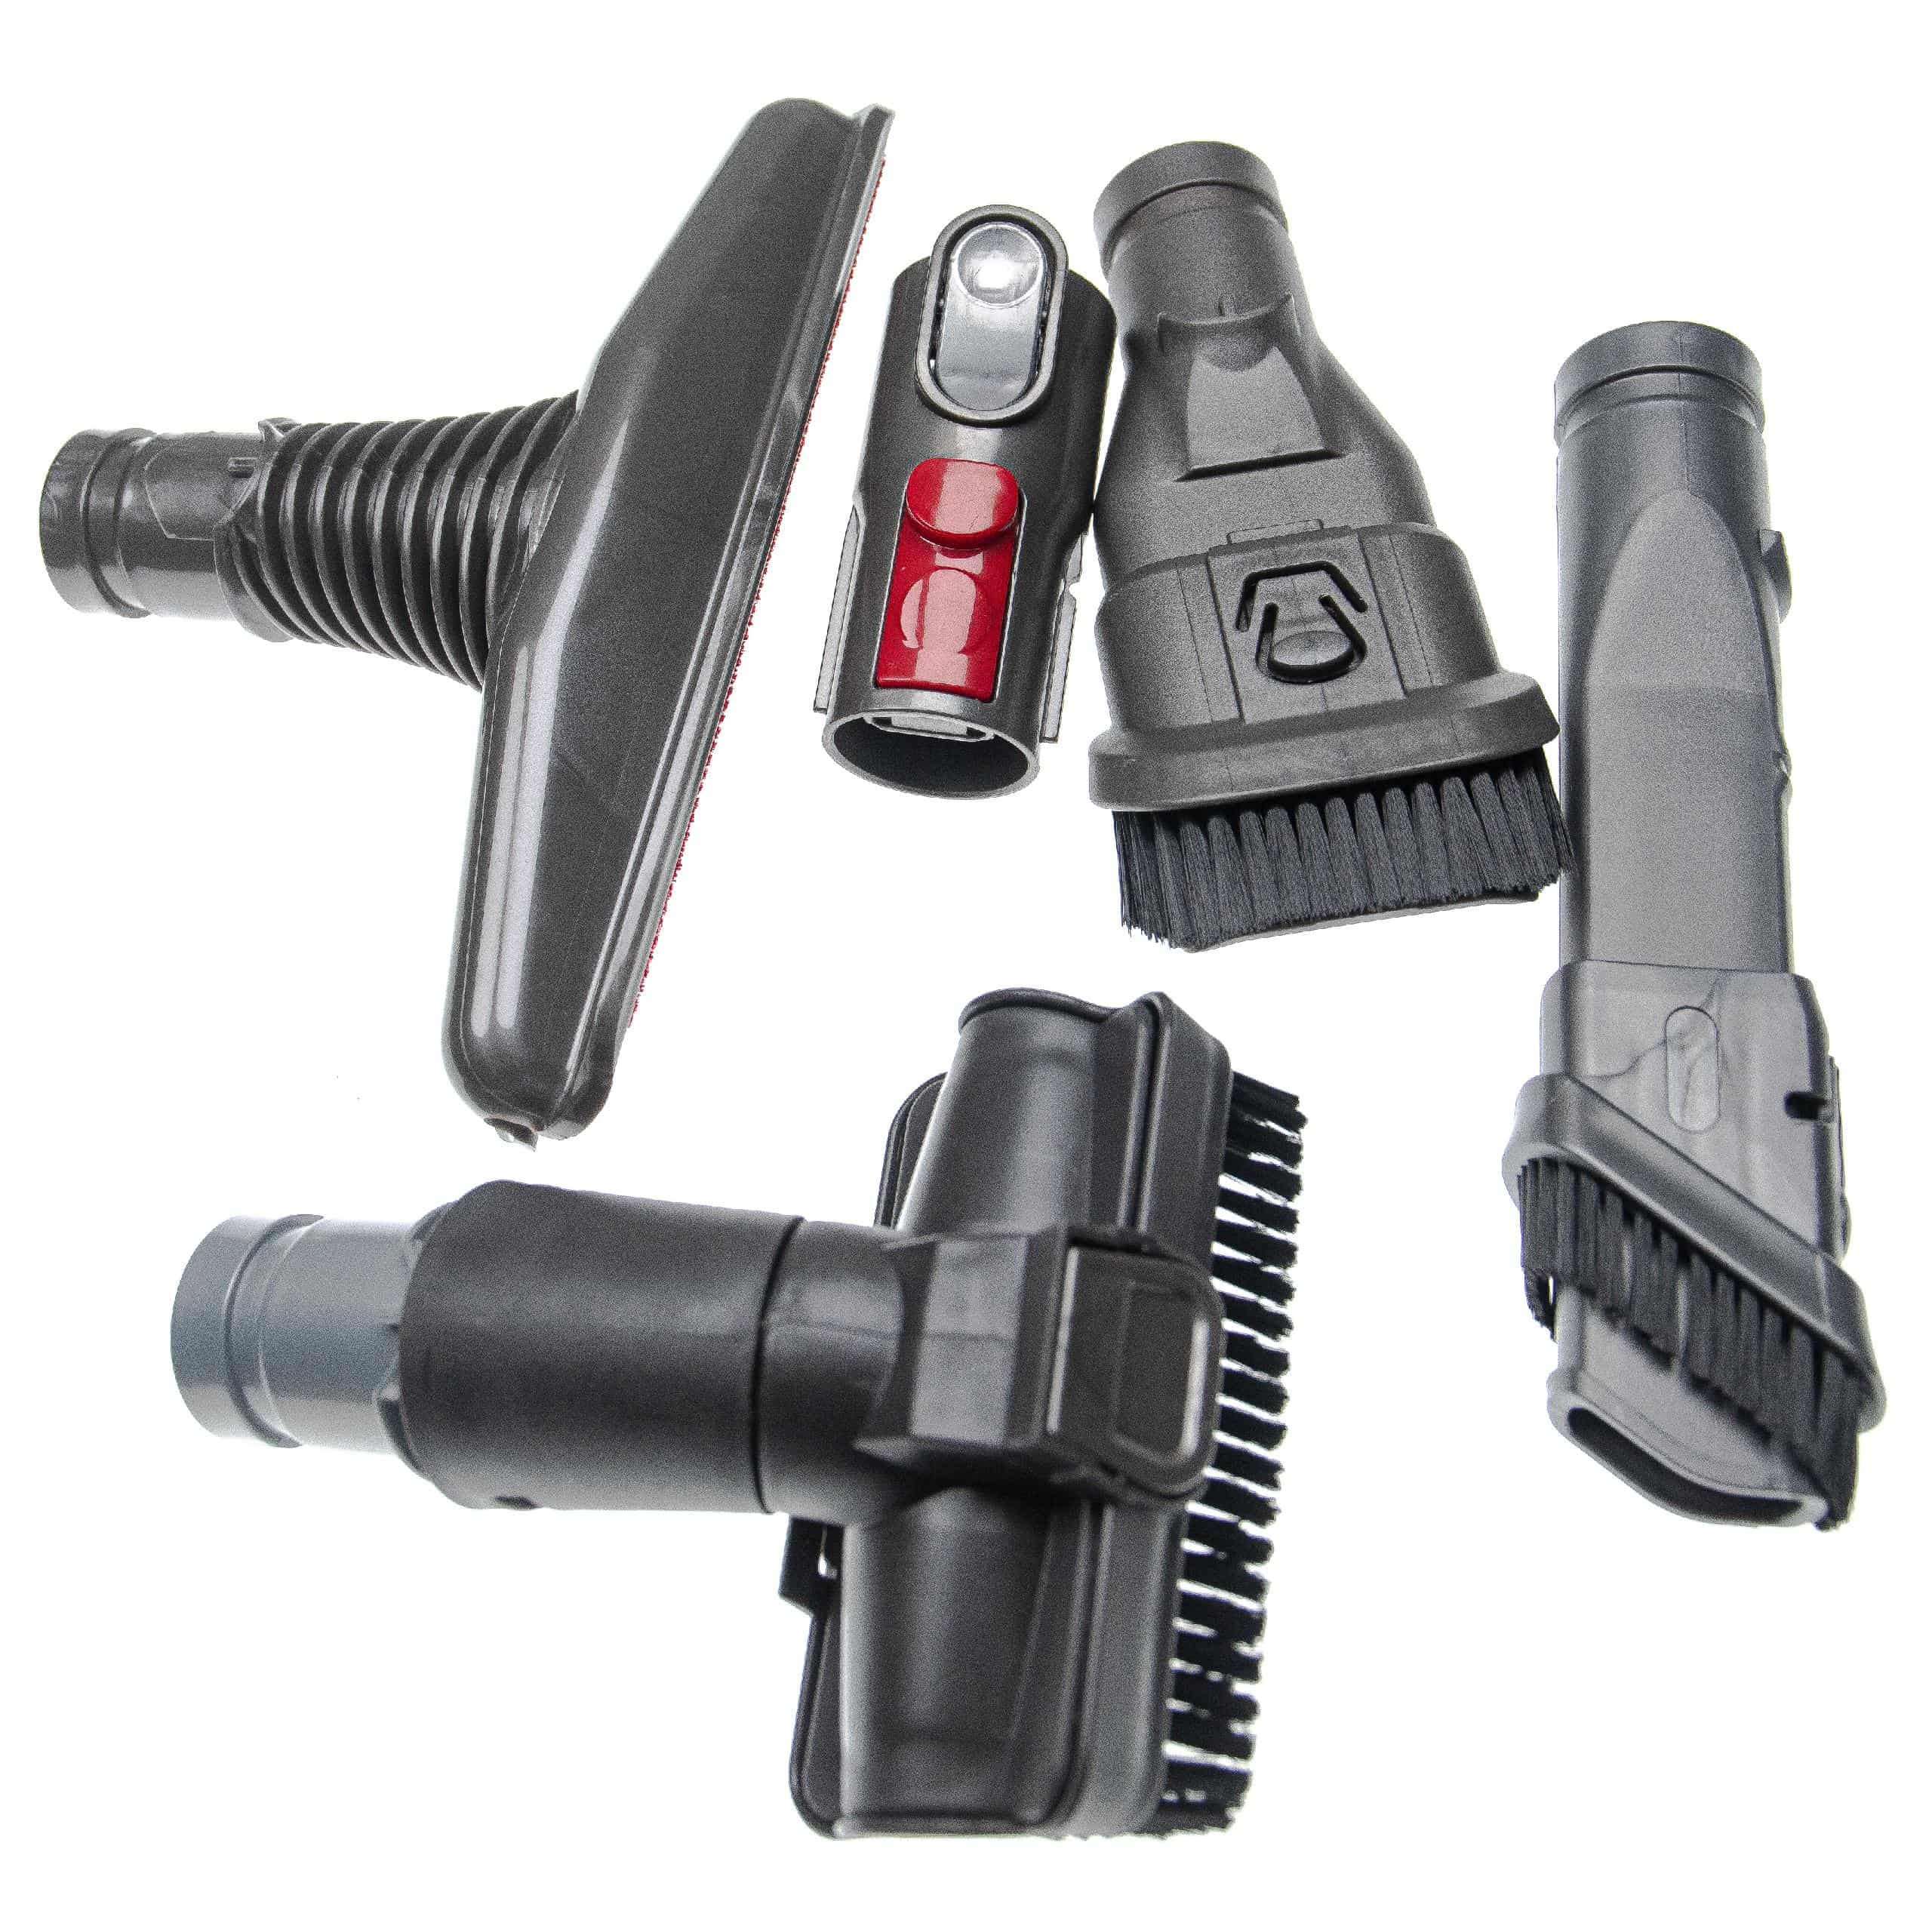 5x Vacuum Cleaner Nozzle Set for Dyson SV10 etc.